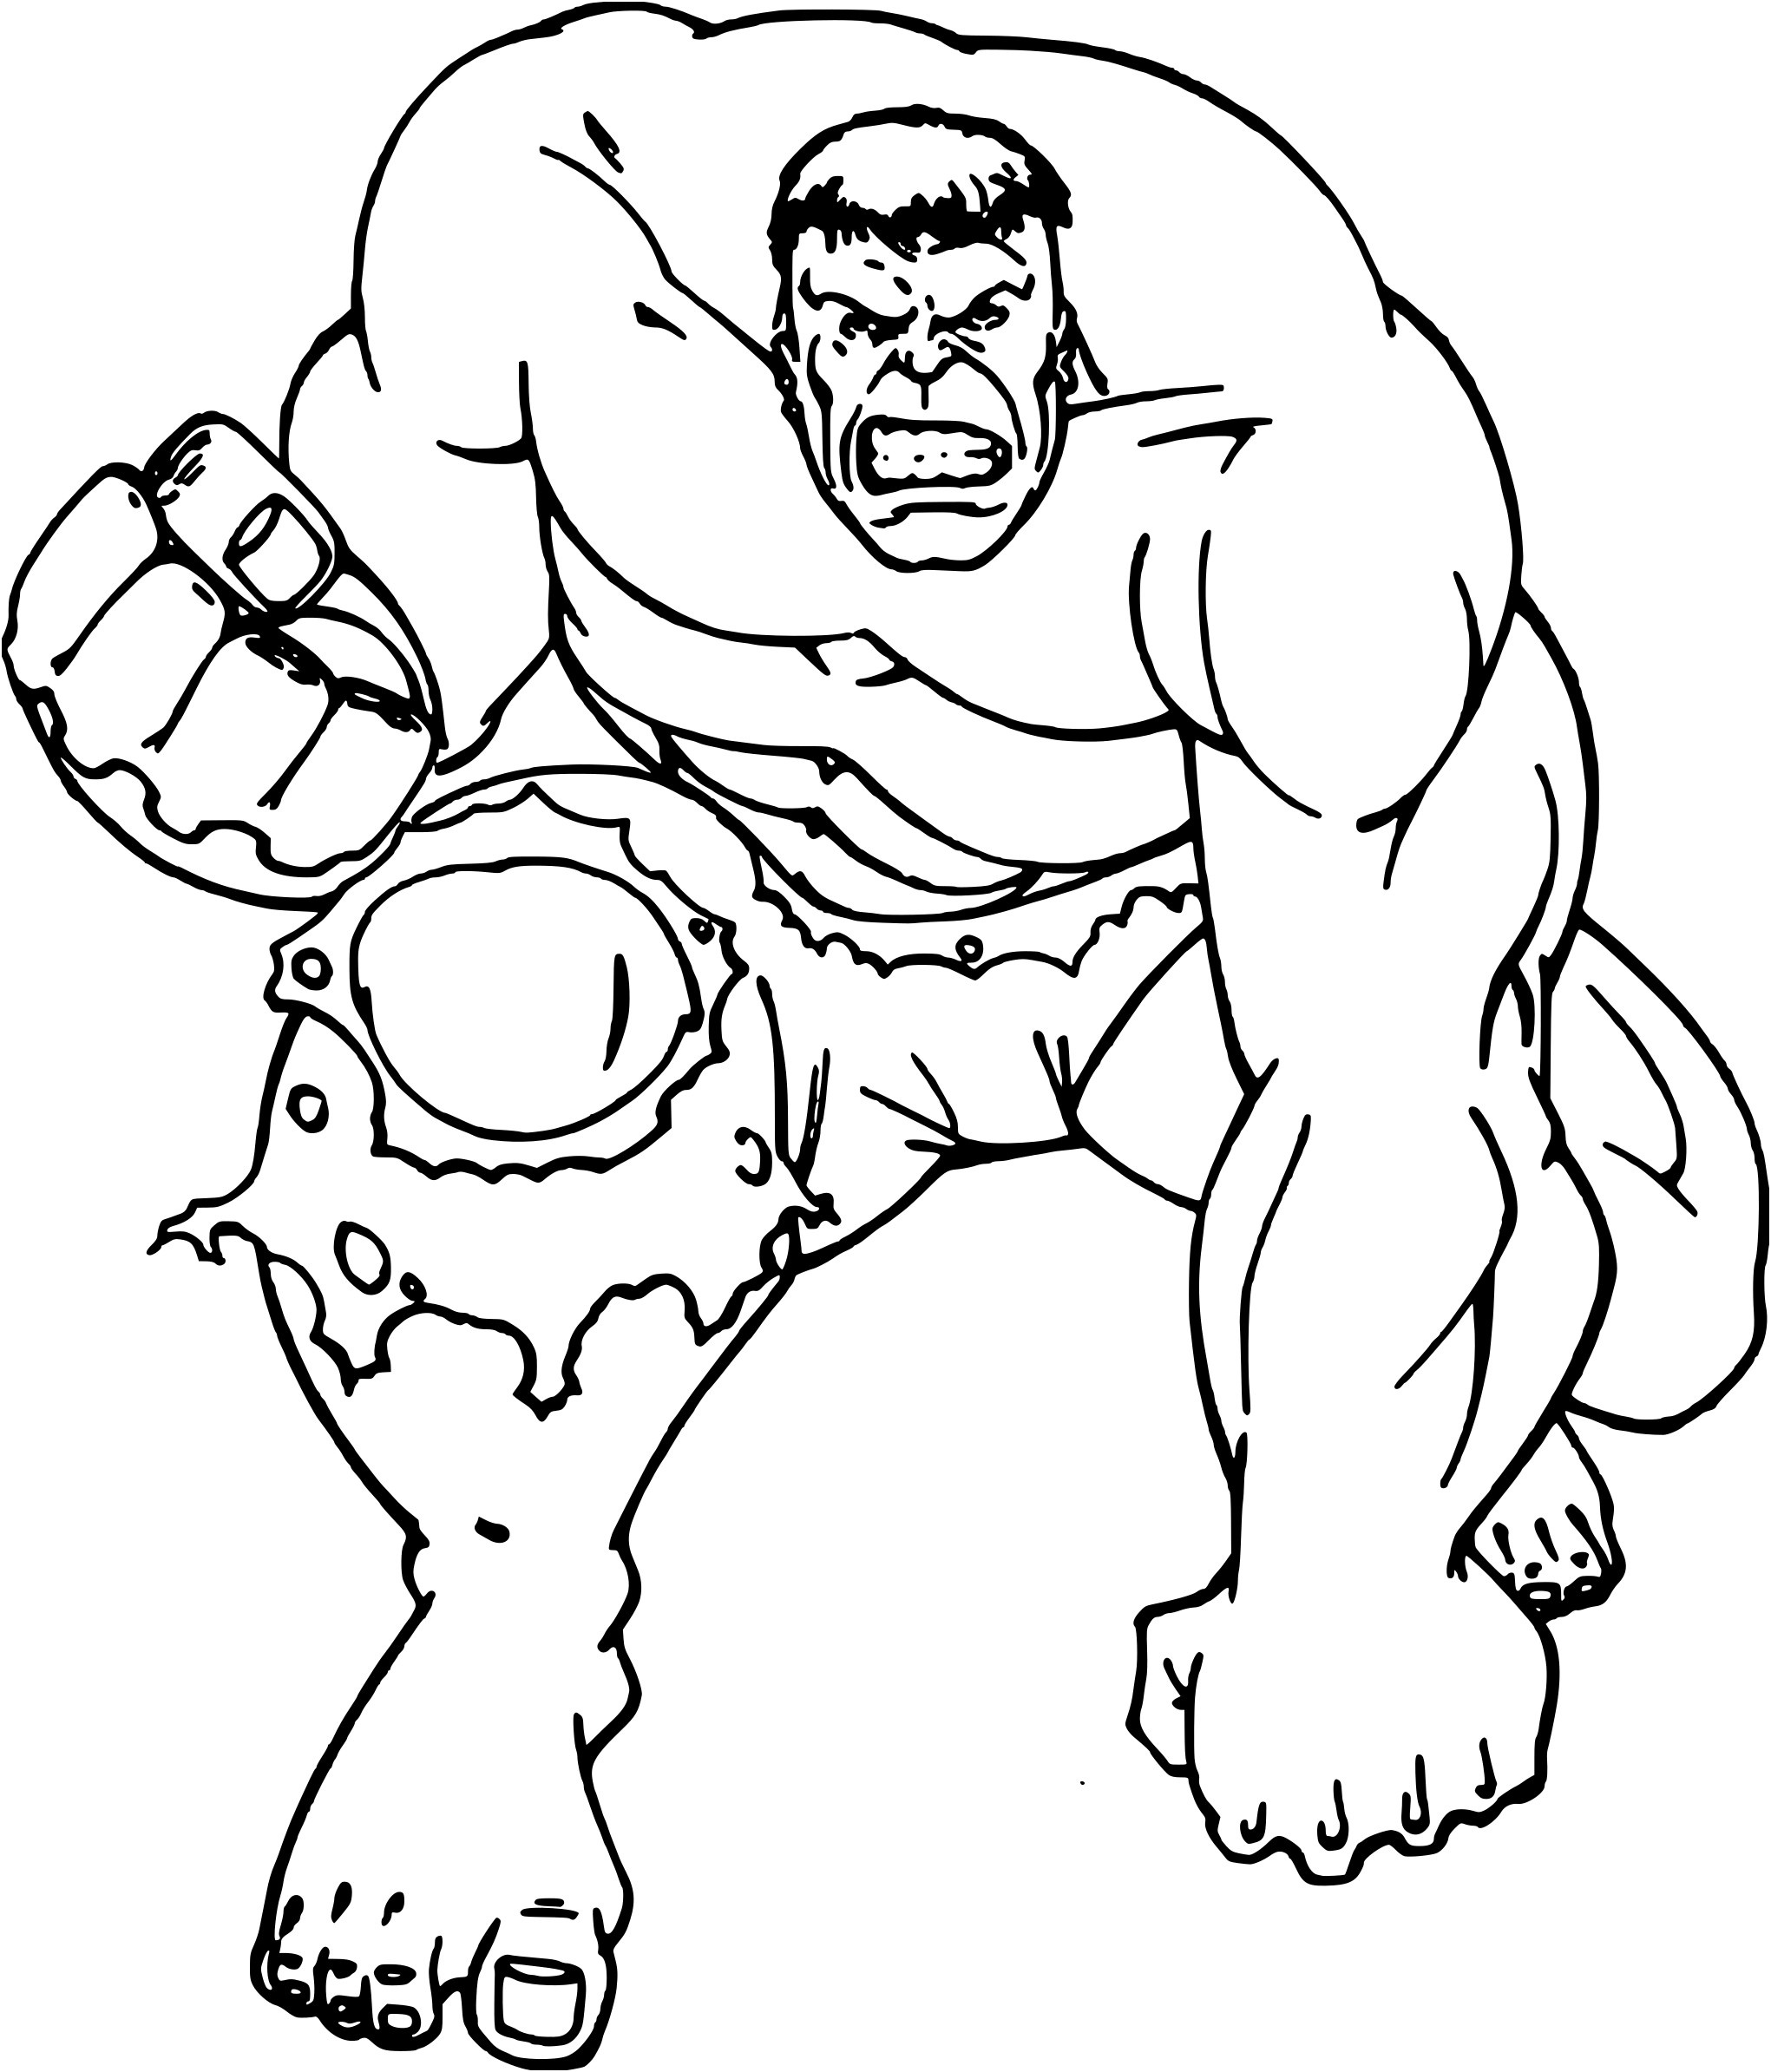 Coloriage À Imprimer Super Héros Inspiration Coloriage Hulk Le Super Héros à Imprimer Et Colorier